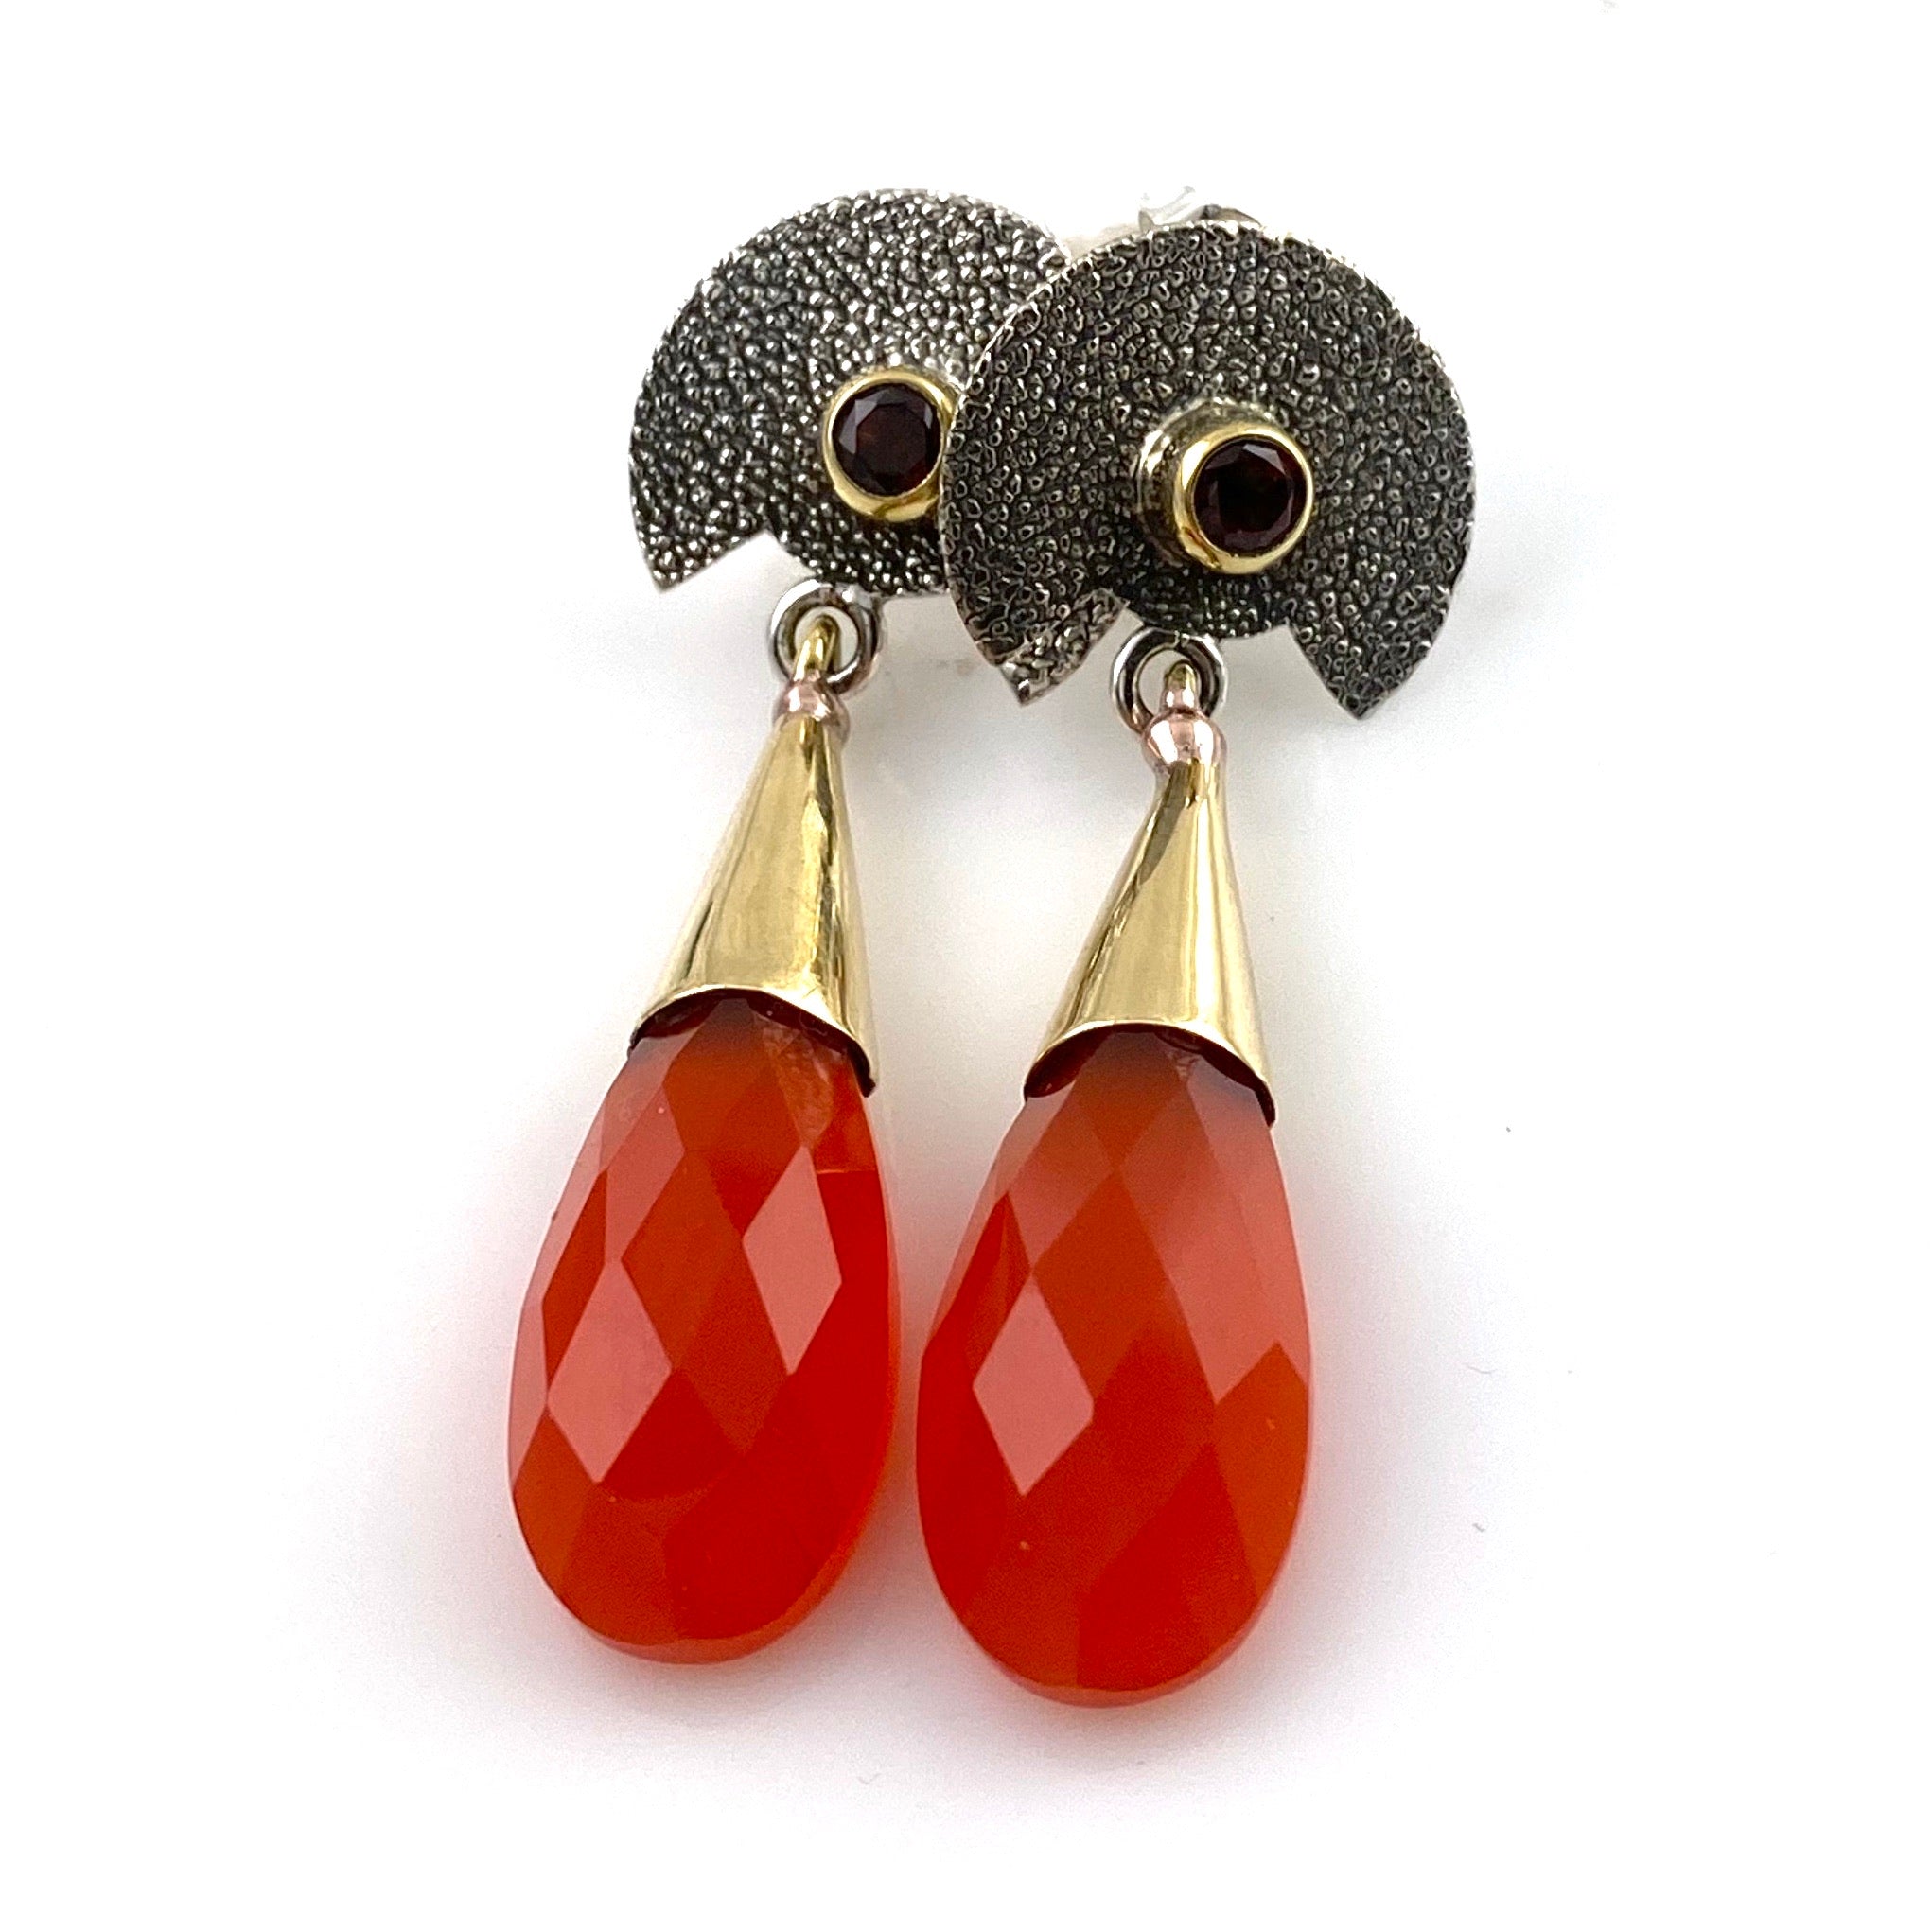 Garnet and Carnelian Sterling Silver Two Tone Earrings - Keja Designs Jewelry